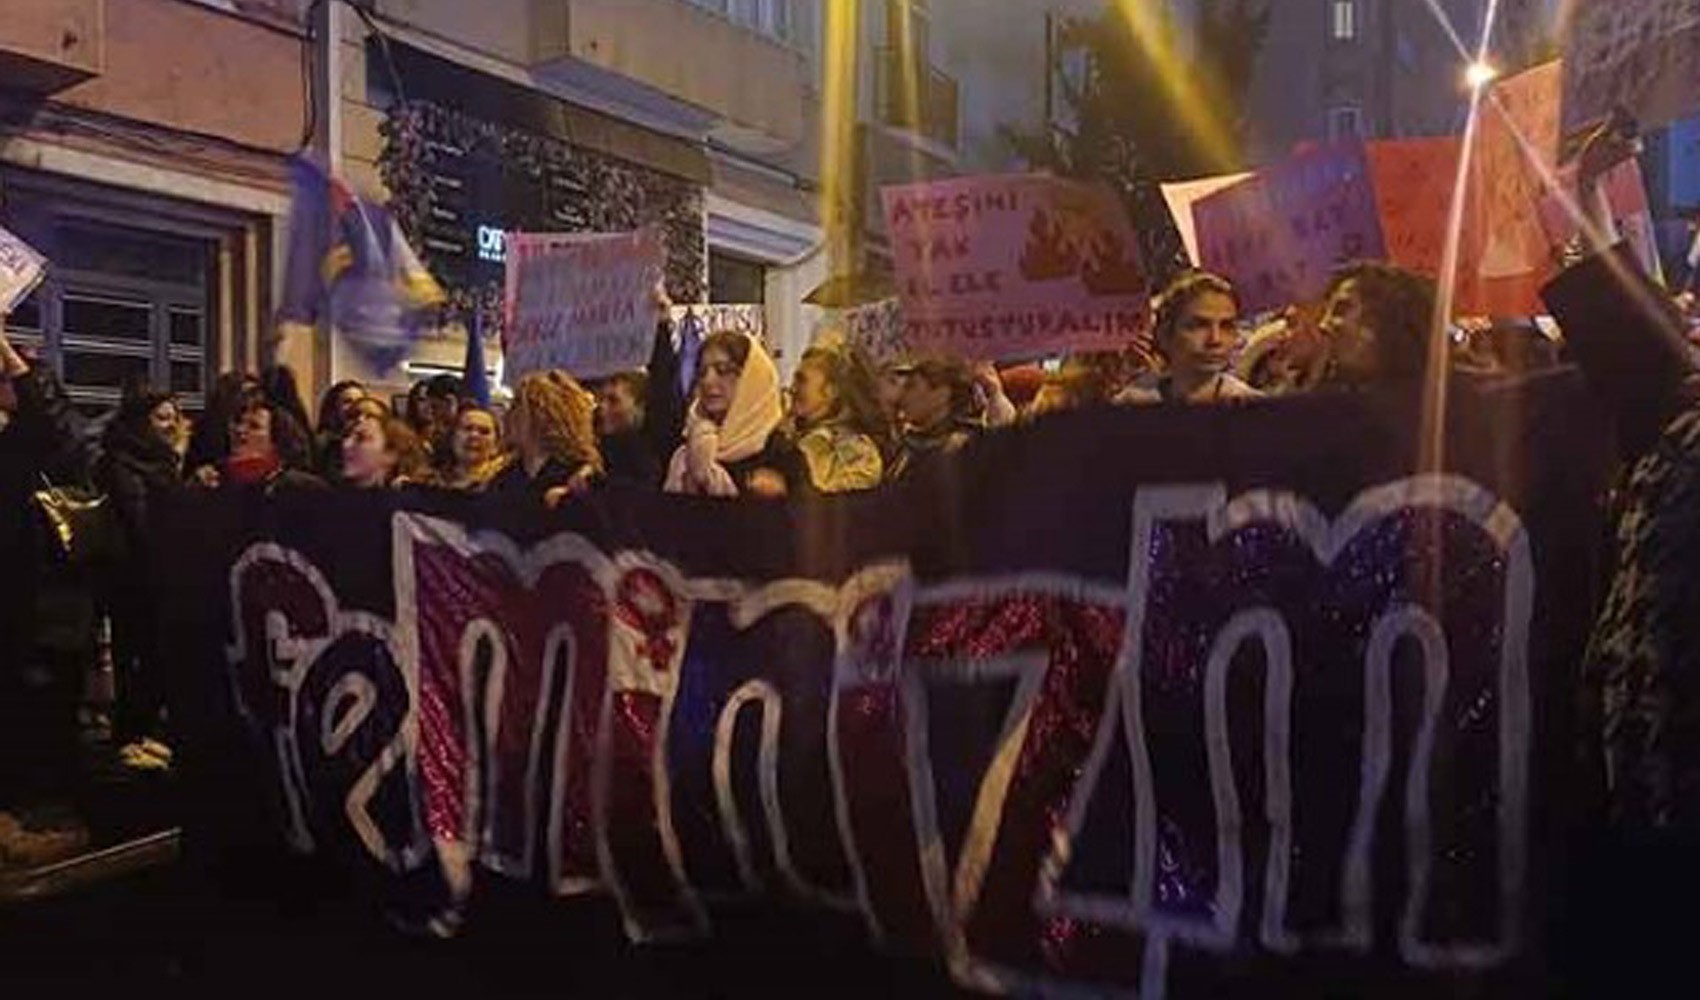 'Feminist Gece Yürüyüşü'nden Cumhurbaşkanı Erdoğan'a gönderme:  'Bana itaat etmezsen dayağı hak edersin' diyen erkeklerden biliyoruz